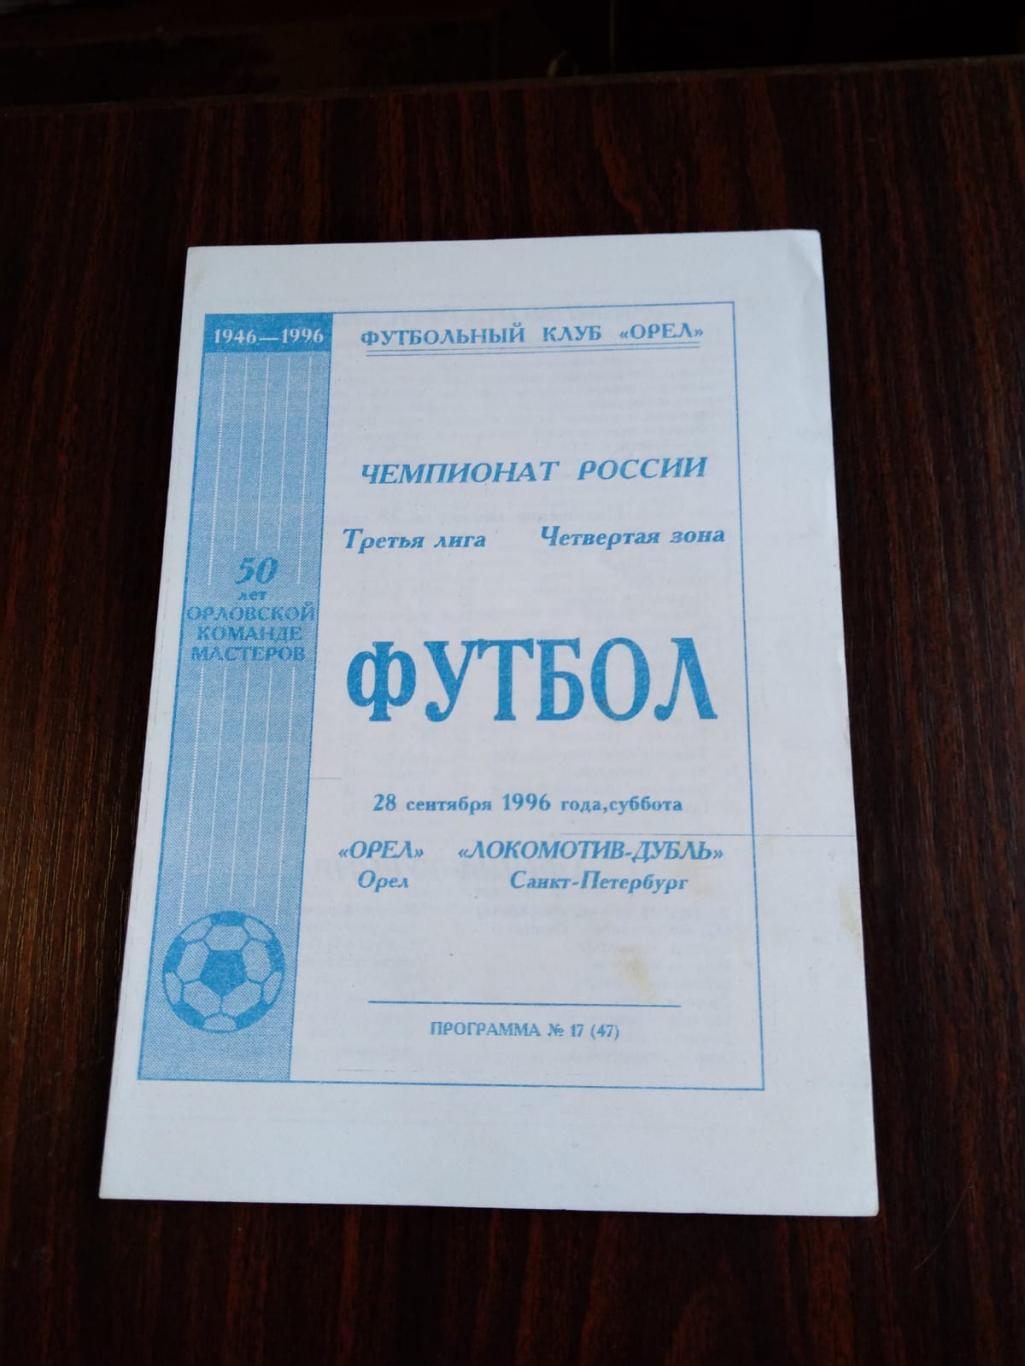 Орел - Локомотив-дубль (СПб) 28.09.1996